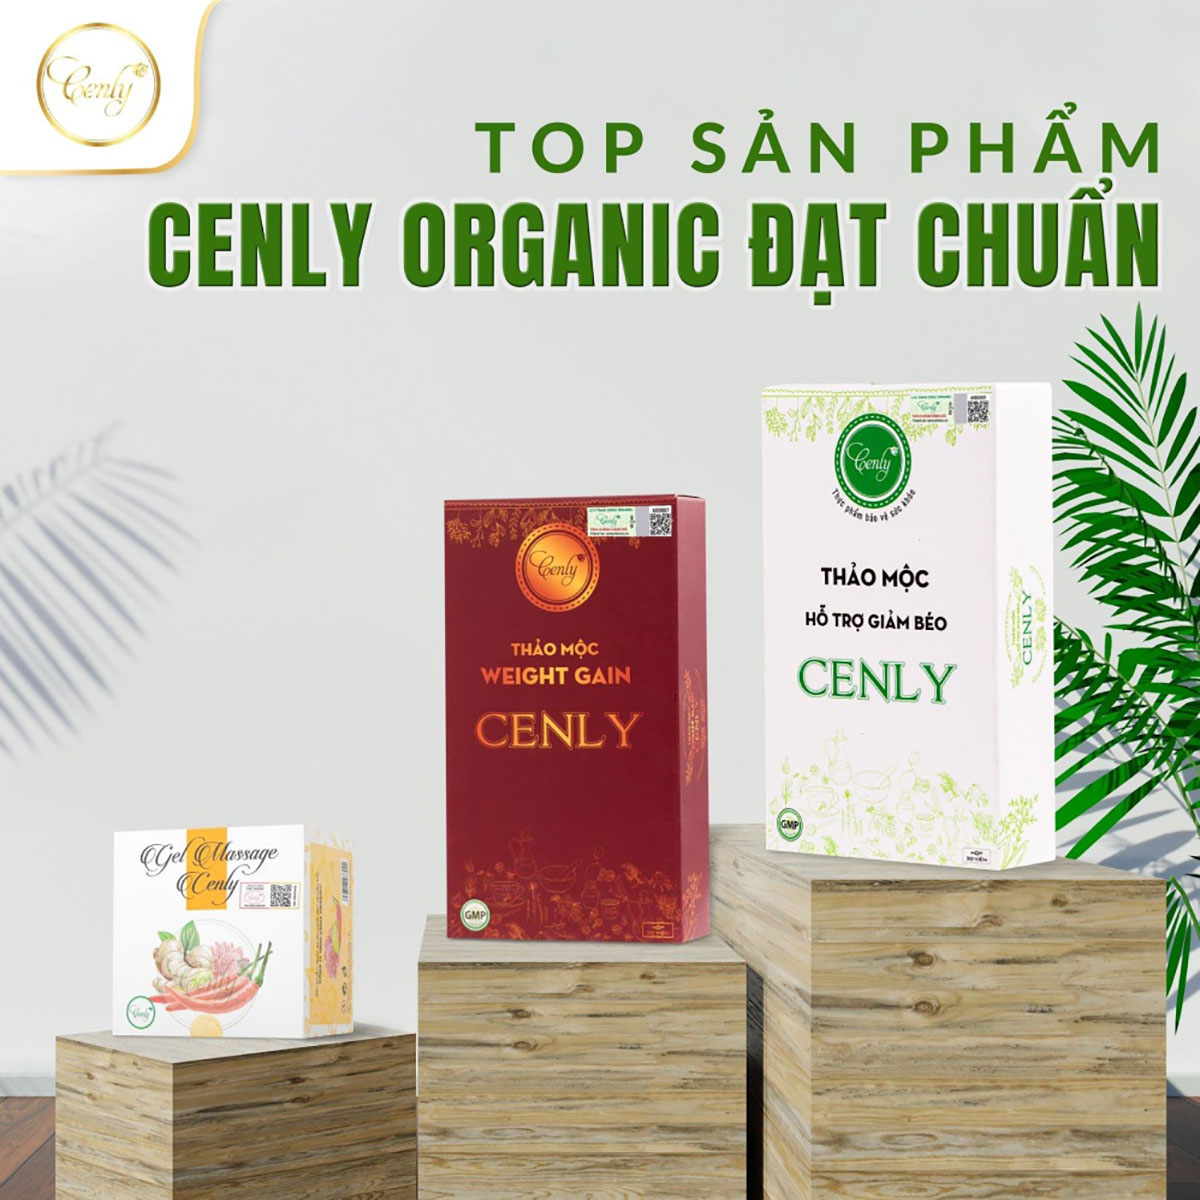 Bộ ba sản phẩm chất lượng tạo nên thương hiệu của Cenly Organic